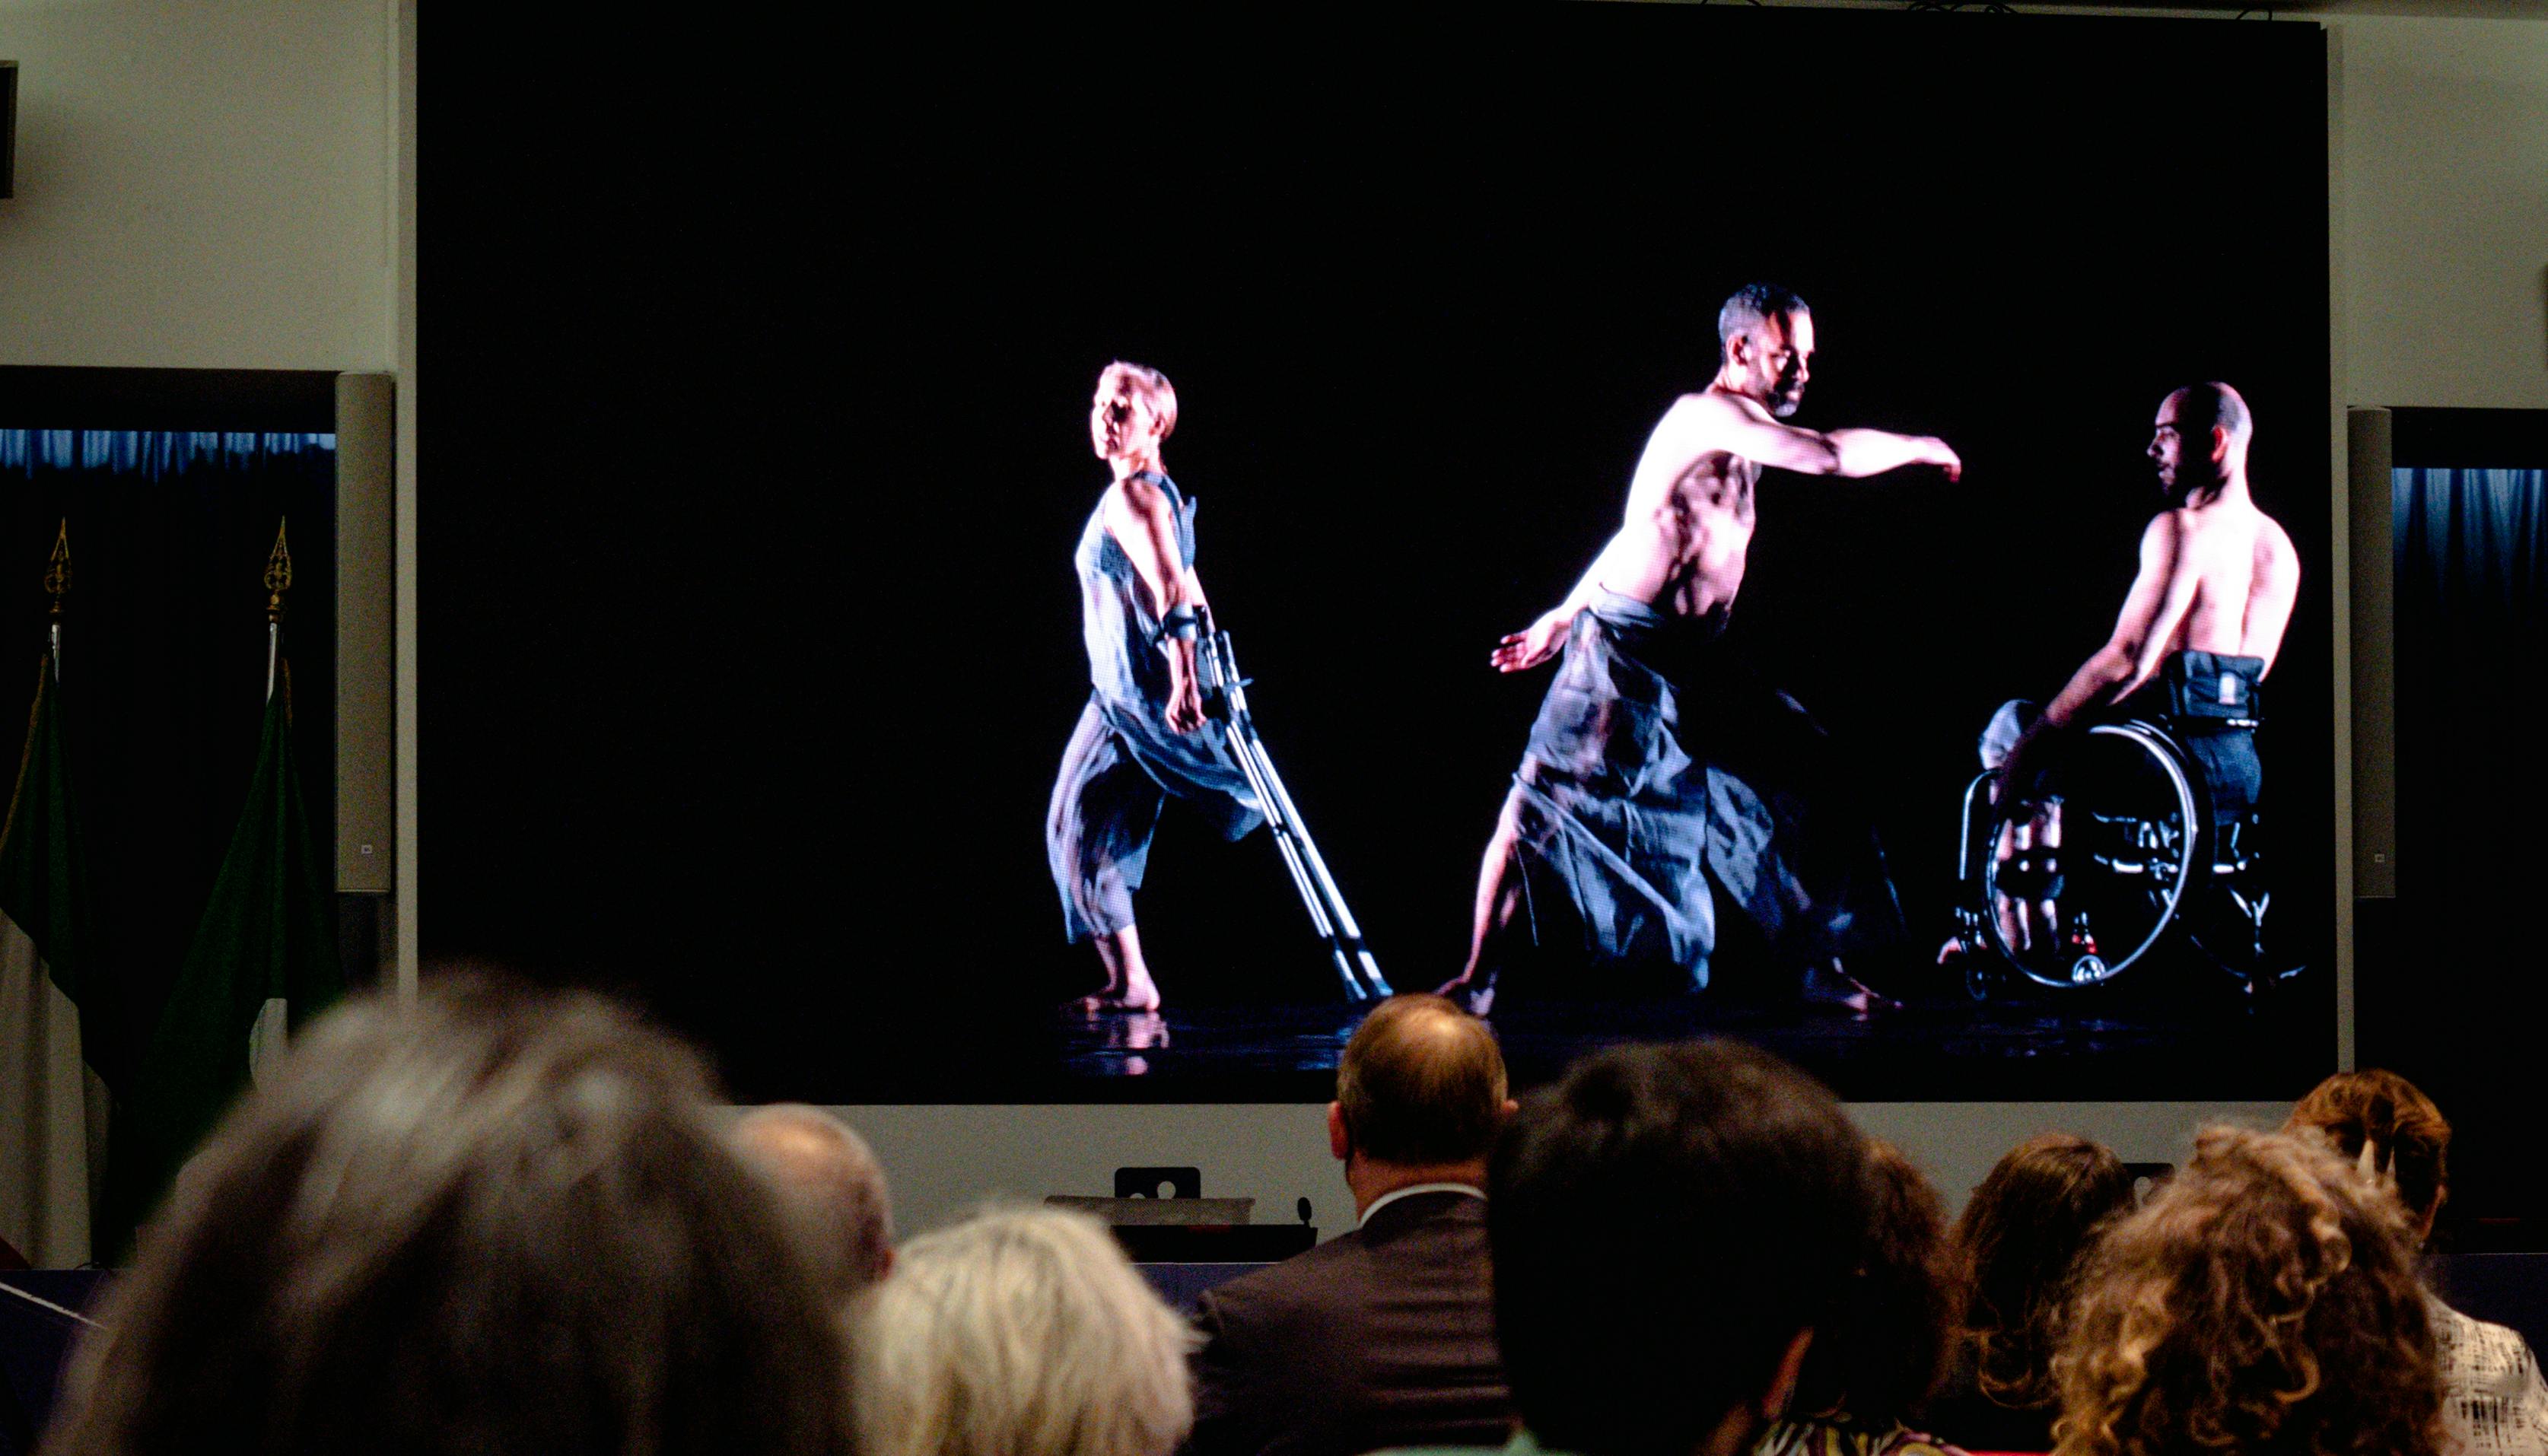 Pubblico guarda un video in proiezione con una danzatrice e due danzatori con disabilità.